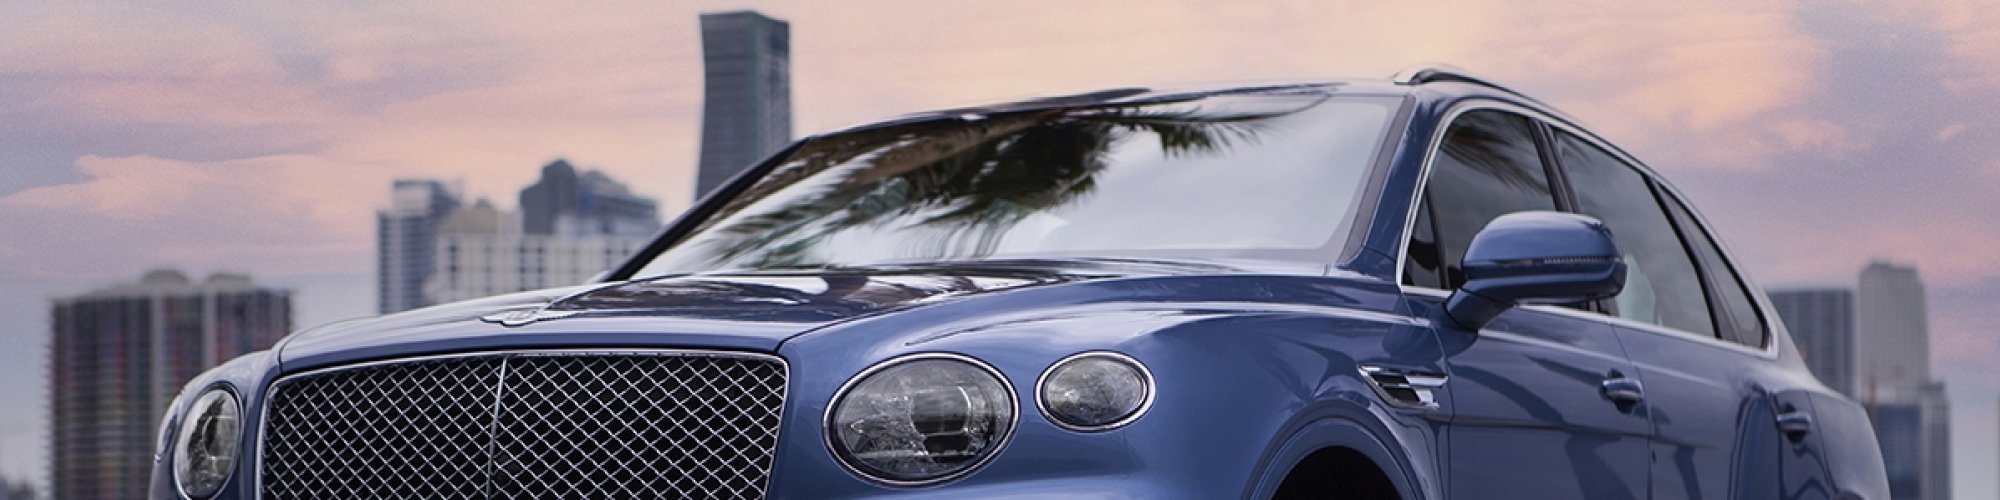 Onyx Exotix Luxury Exotic Car Rental Miami Startus